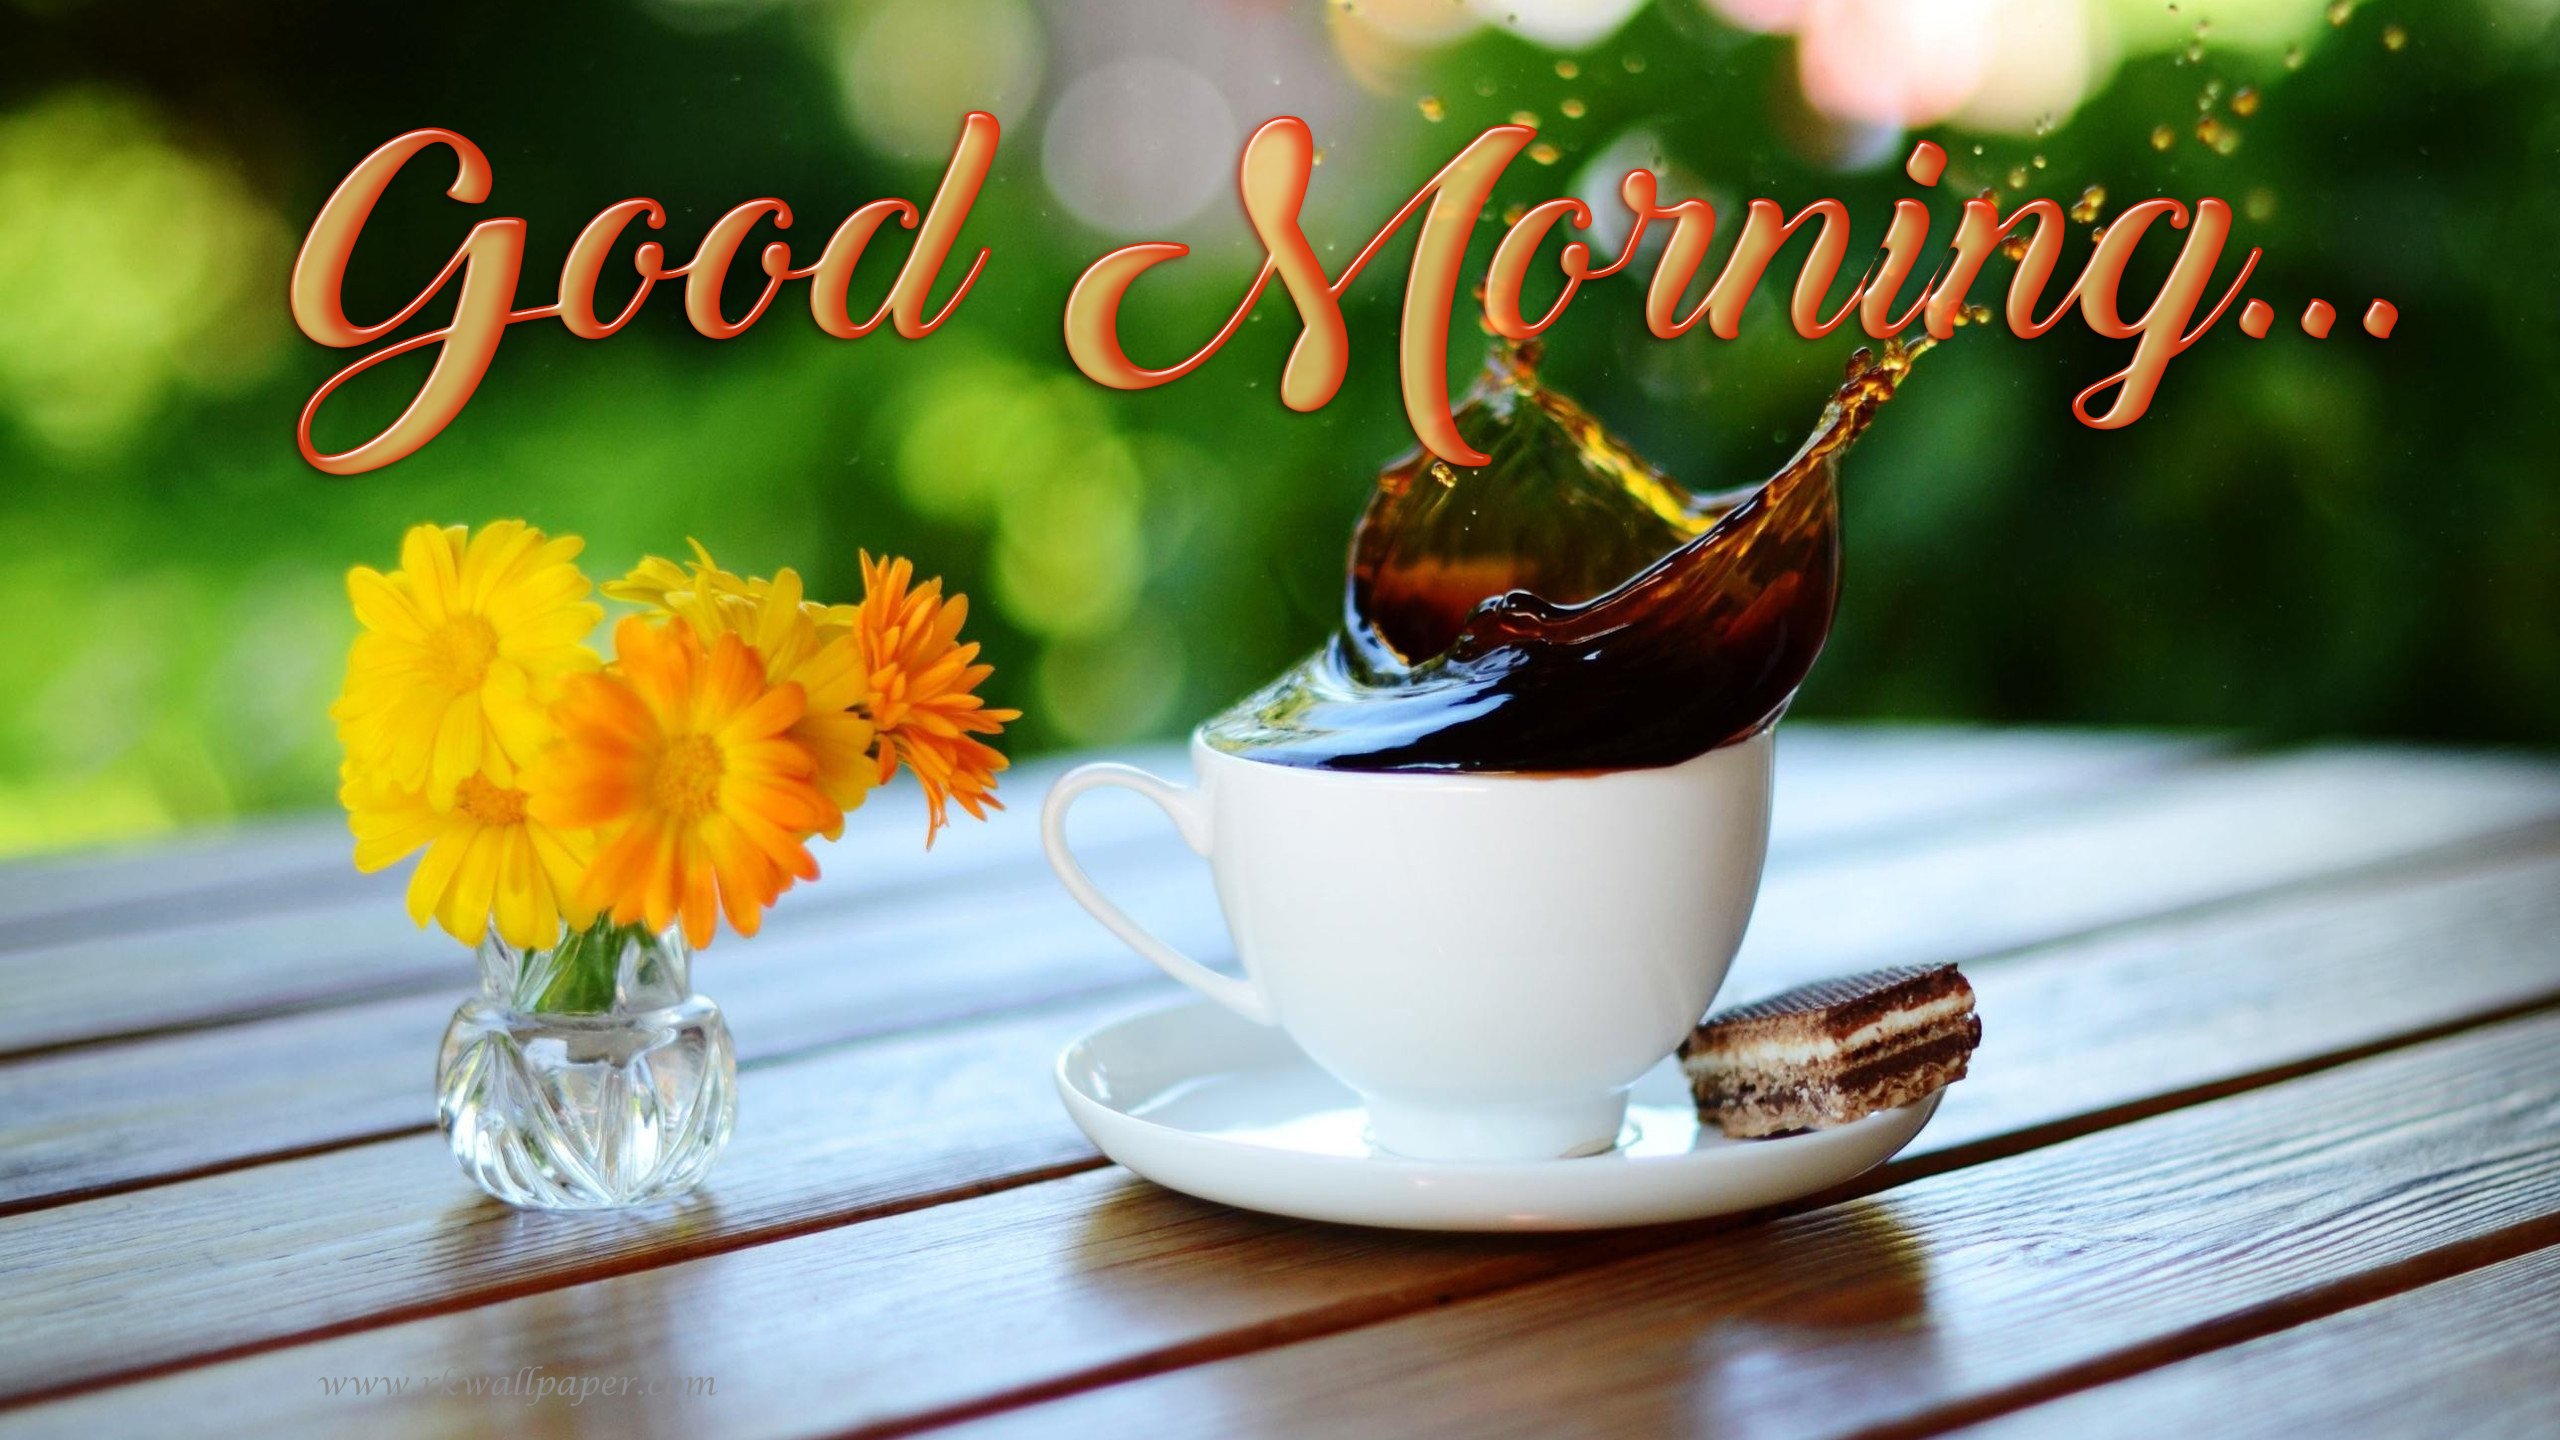 Good morning sir can i. С добрым утром картинки красивые. Открытки с добрым утром на английском языке. Красивое утро. Открытка с добрым утра наманглийском языке.